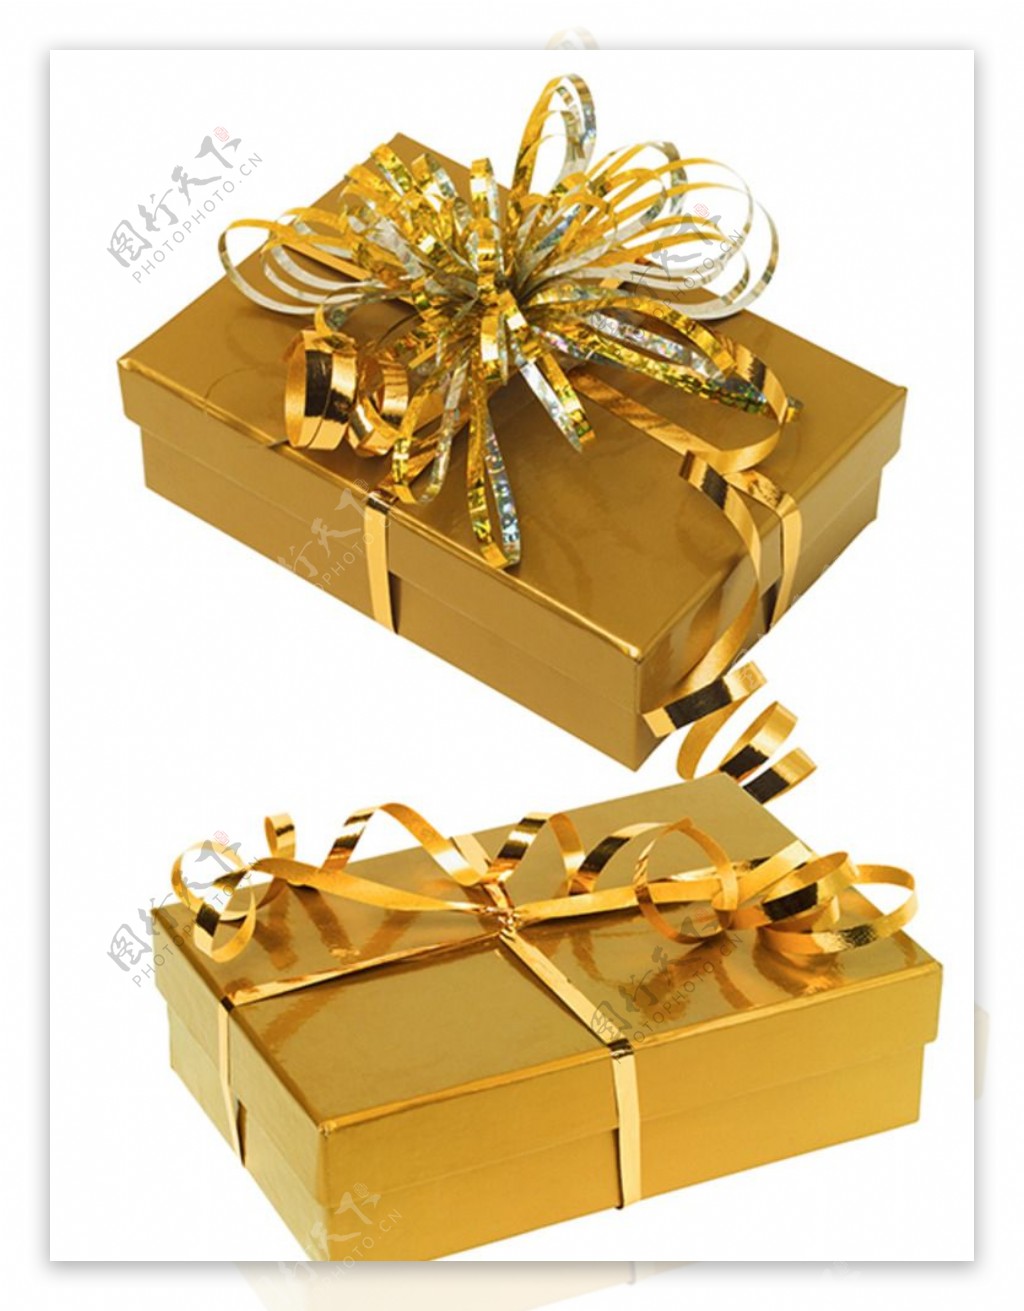 布置道具_新年堆头礼盒圣诞节装饰品礼盒美陈节日场景布置礼物盒 - 阿里巴巴